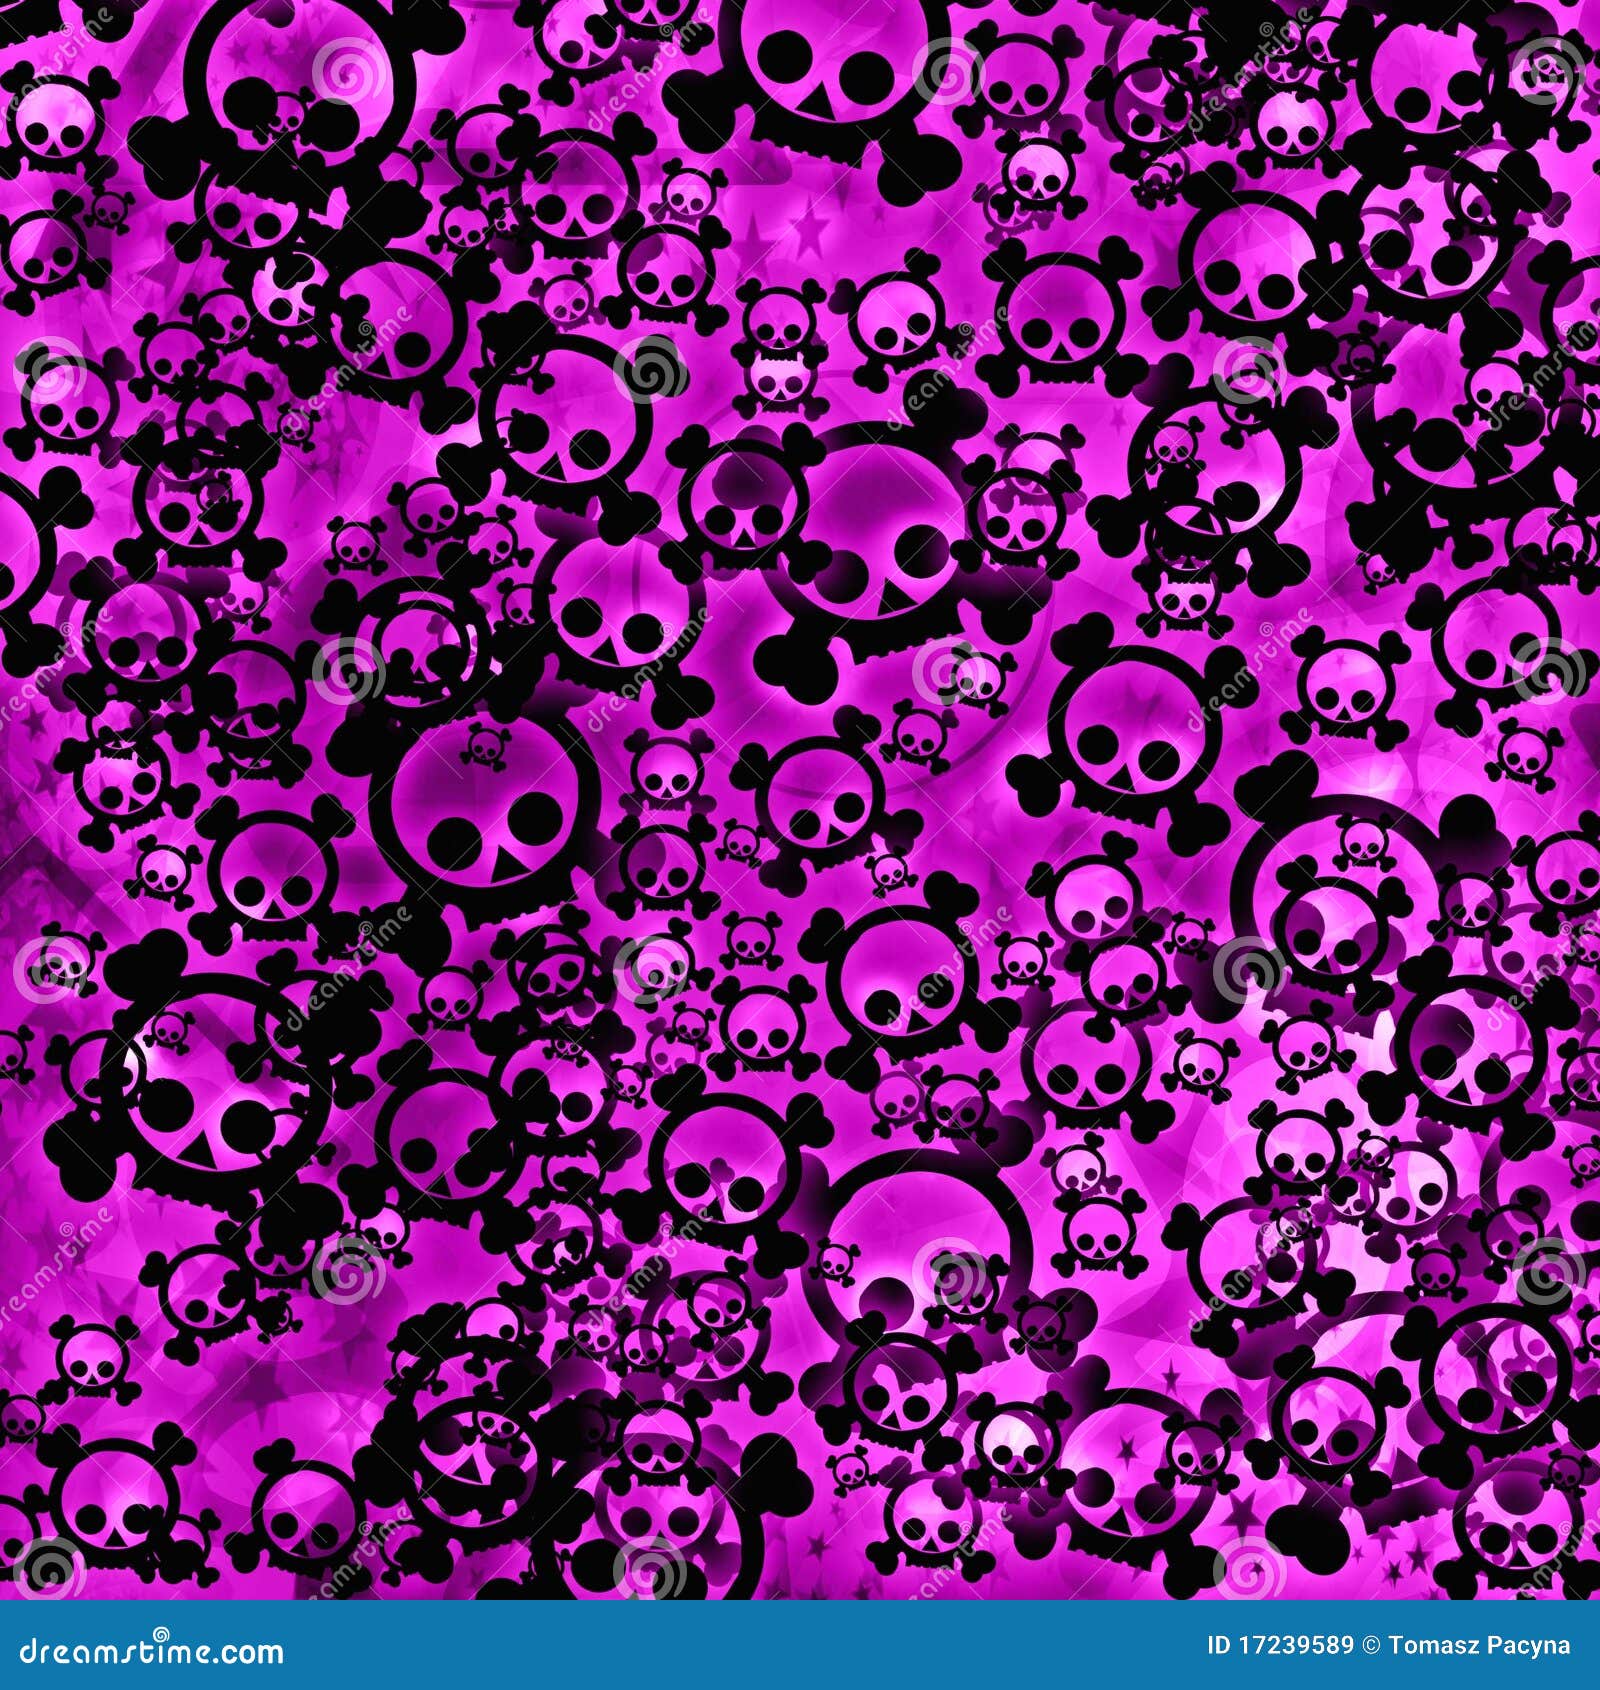 Black Skulls On Pink Background Stock Illustration